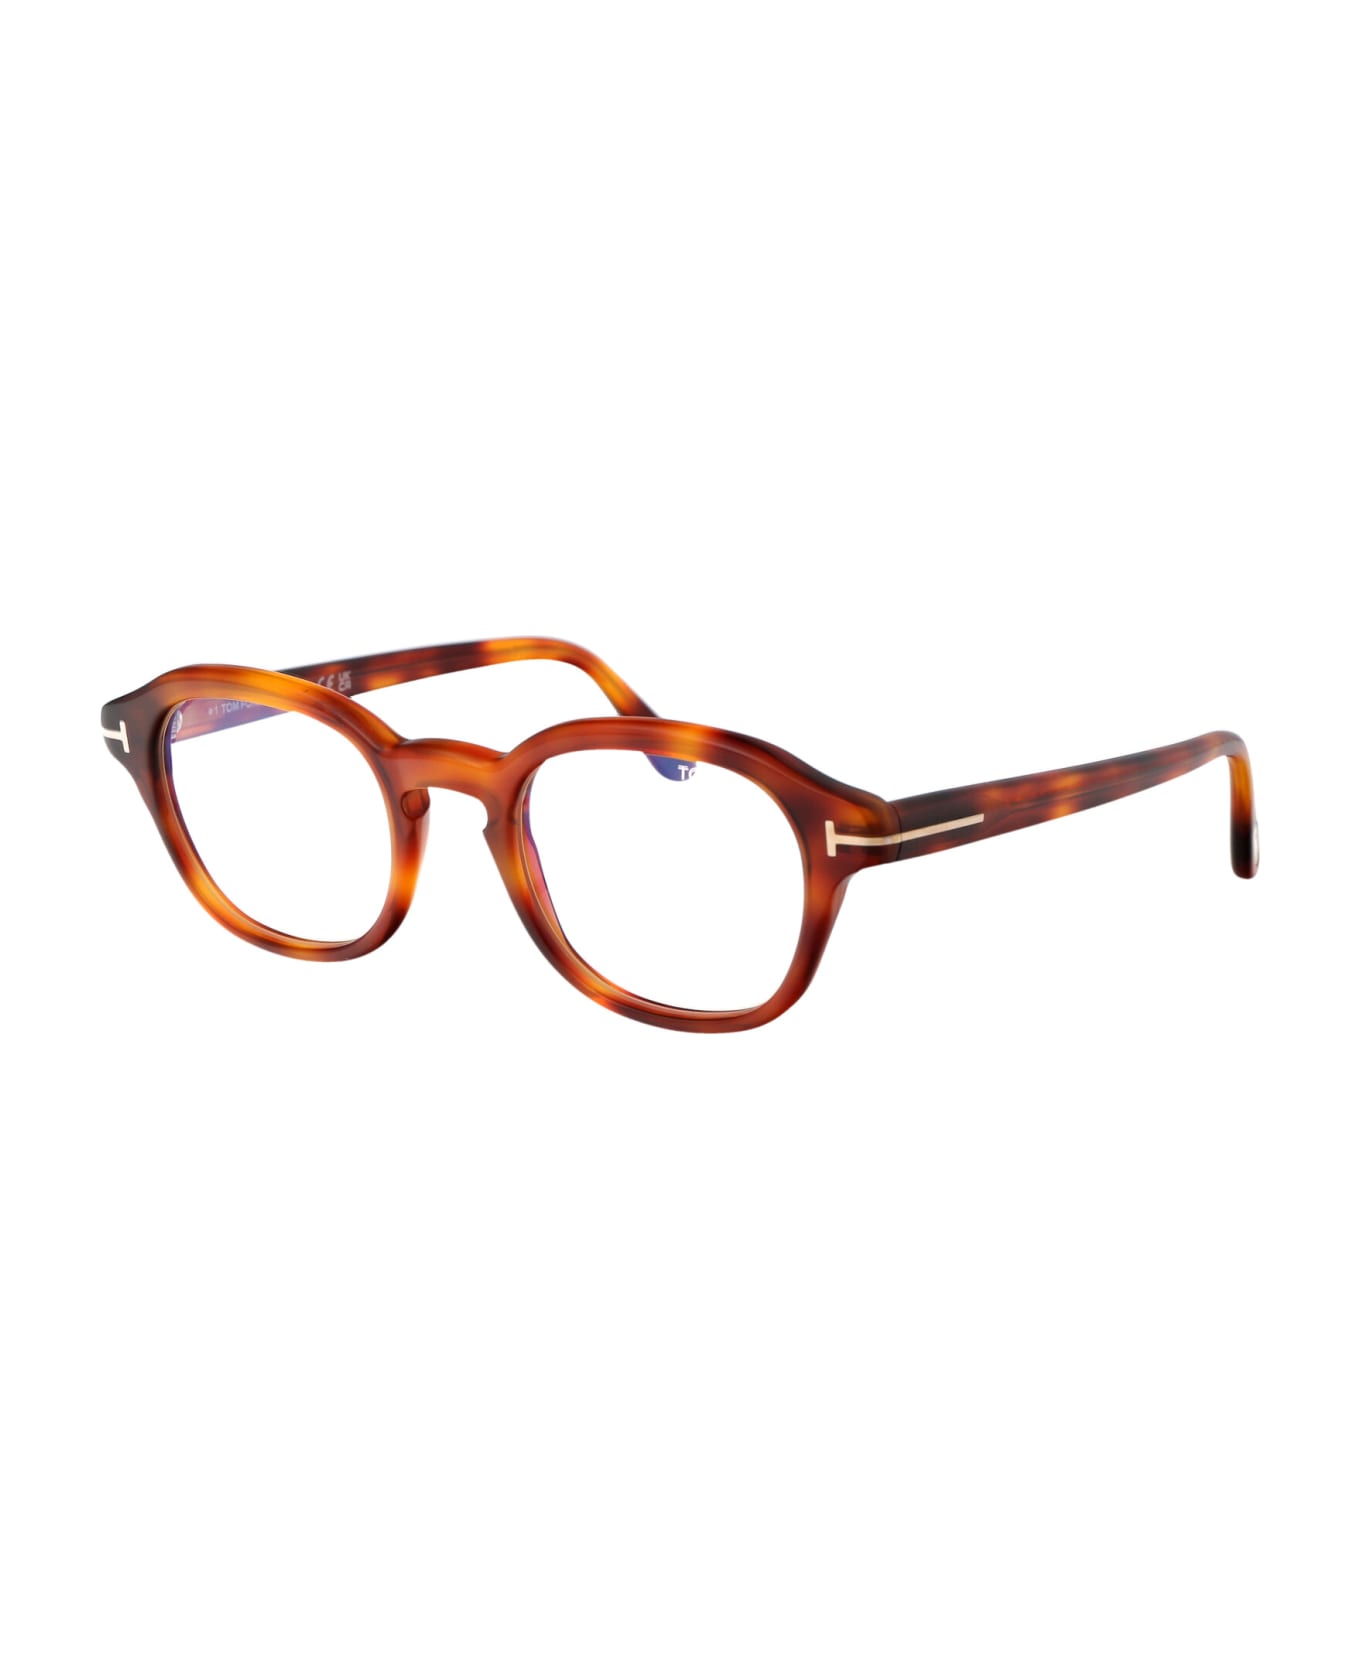 Tom Ford Eyewear Ft5871-b Glasses - 053 Avana Bionda アイウェア